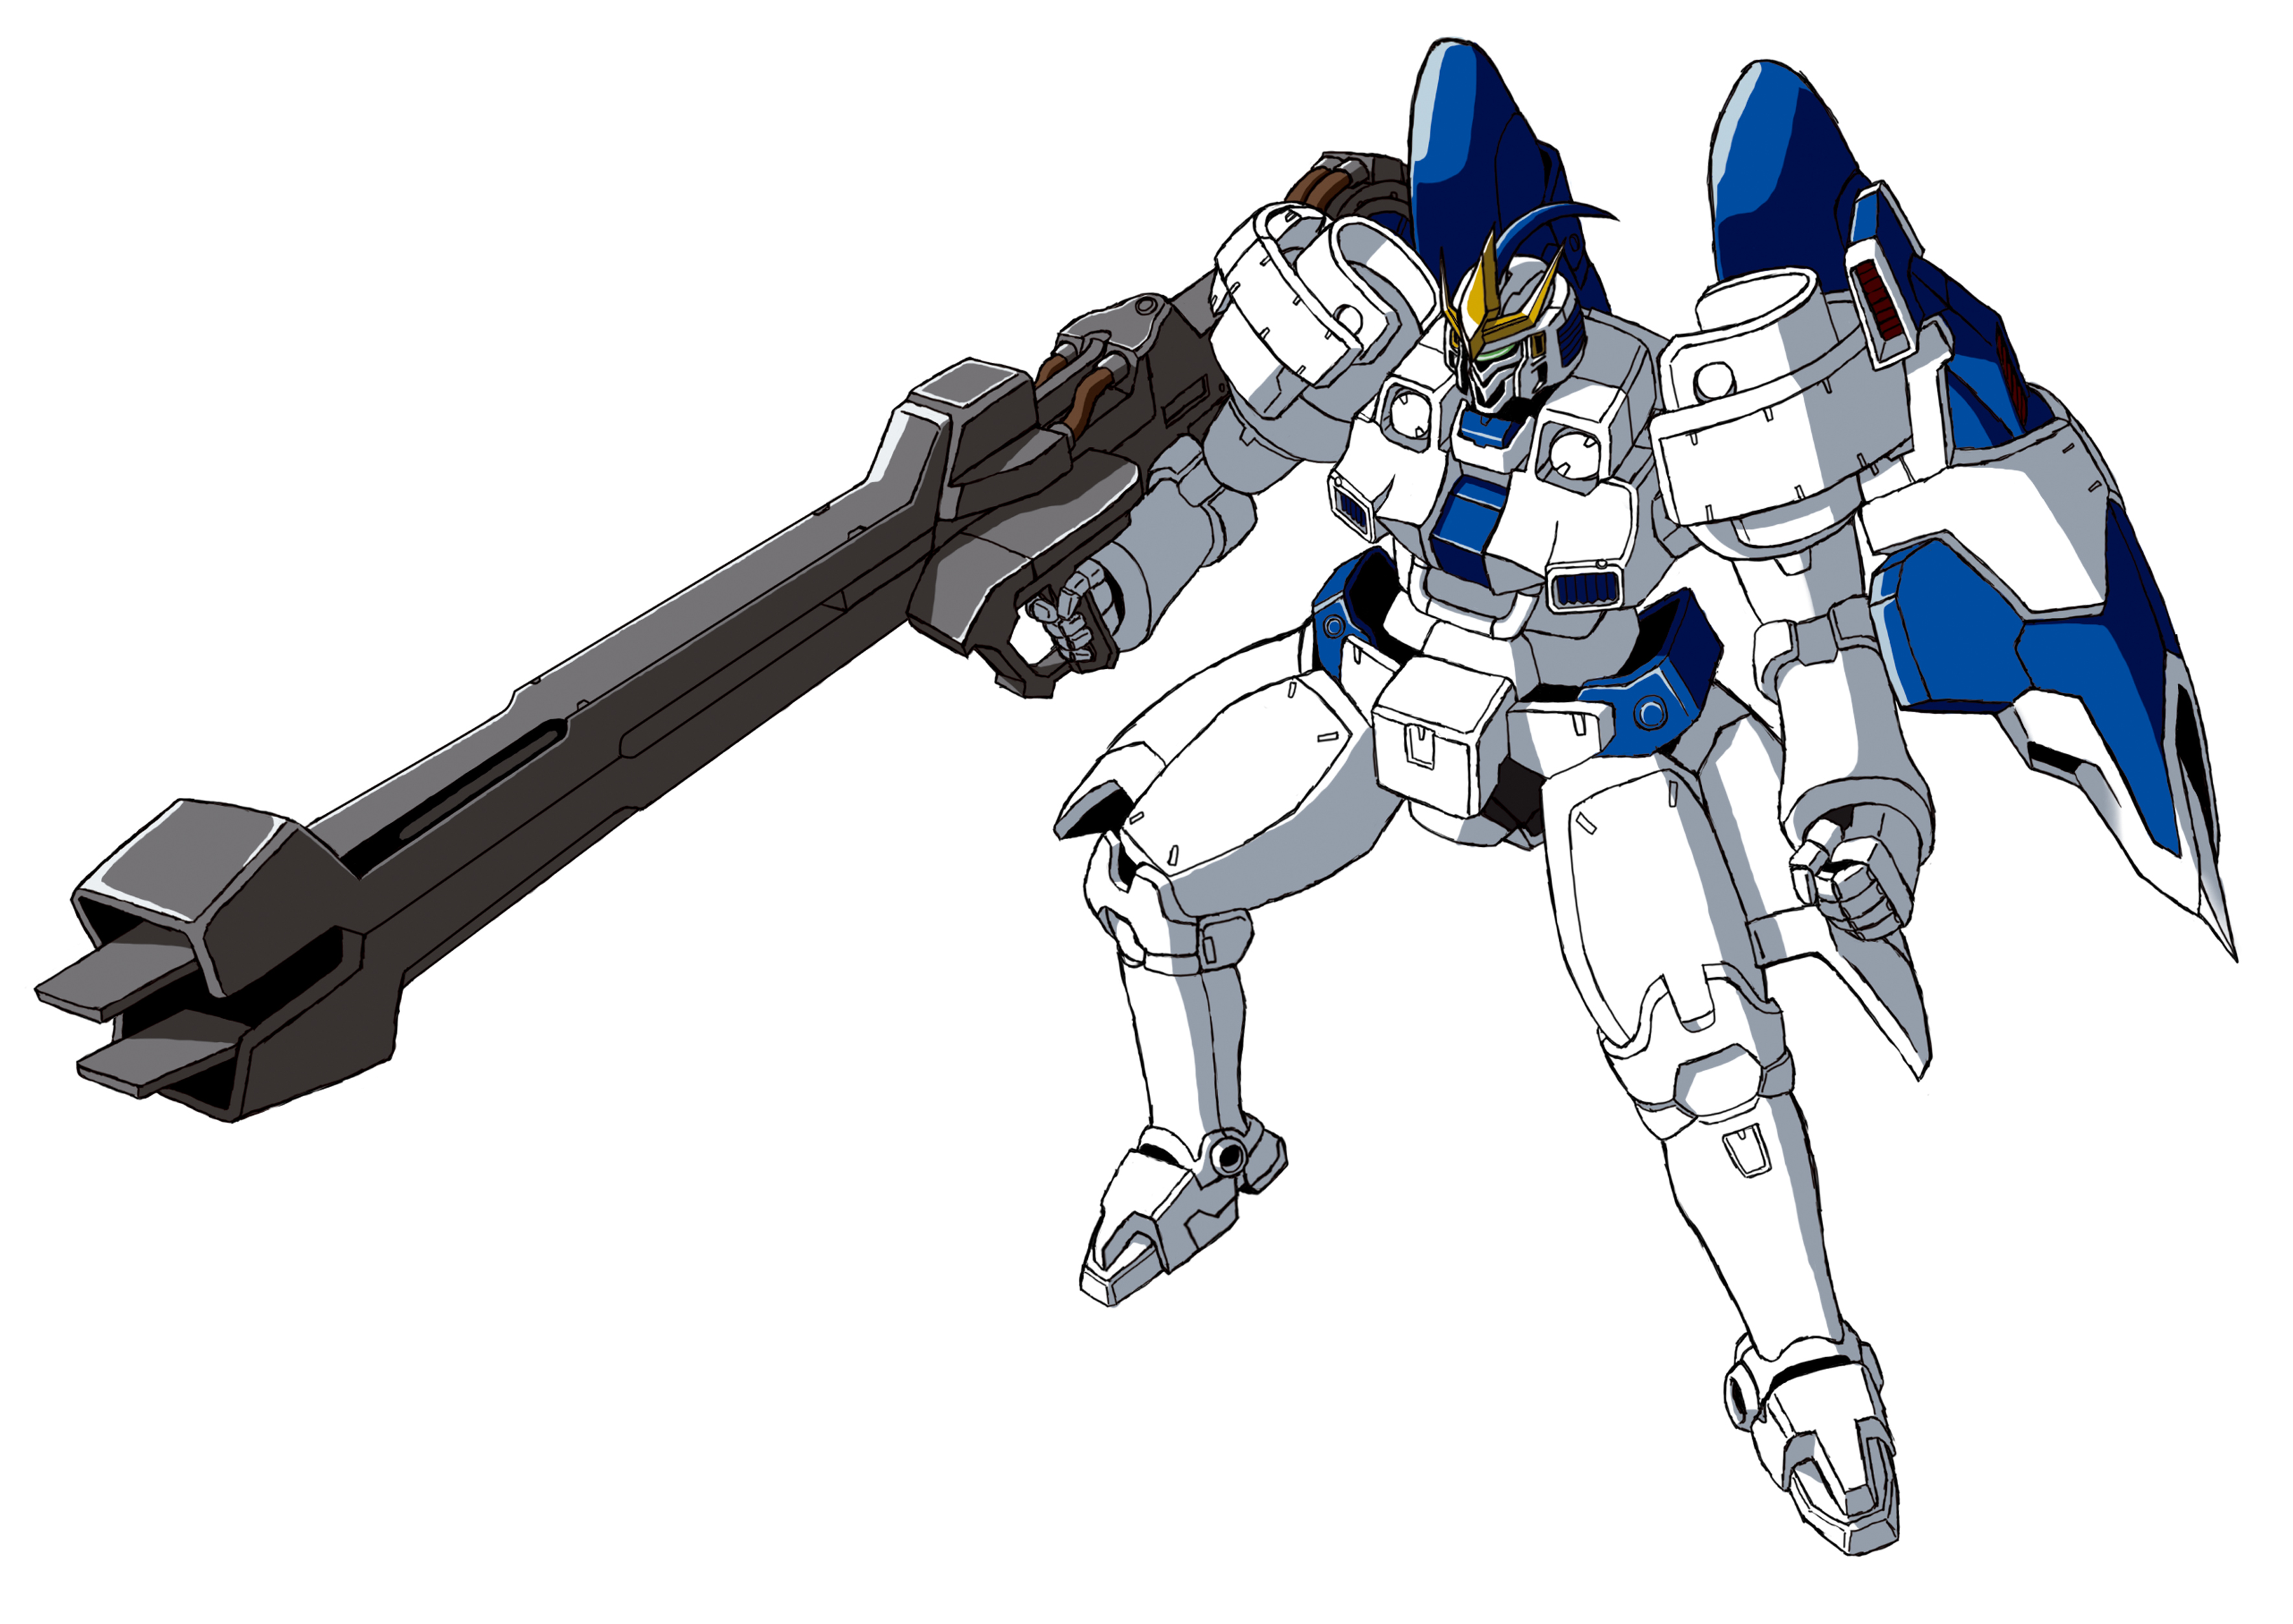 Tallgeese Iii Anime Mechs Super Robot Taisen Mobile Suit Gundam Wing Artwork Digital Art Fan Art Mob 3541x2508